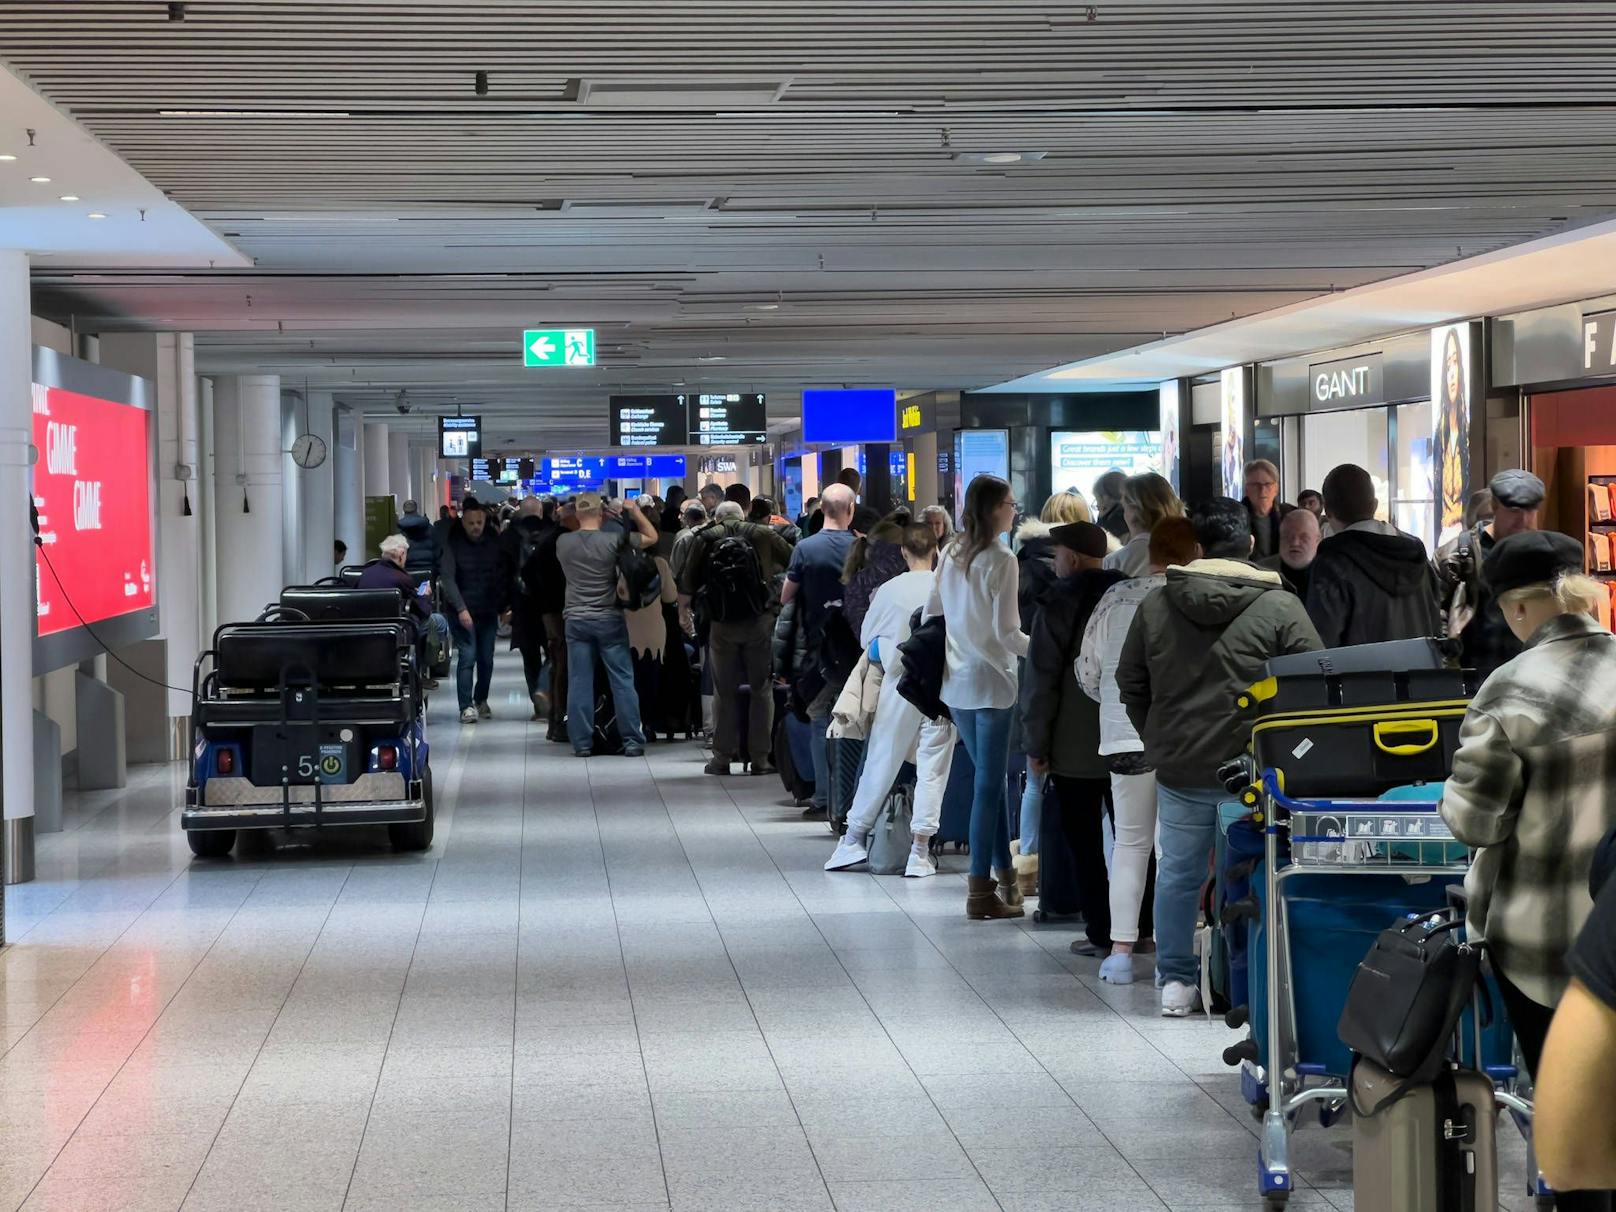 "Haben ein Problem" – Grund für Flughafen-Chaos bekannt